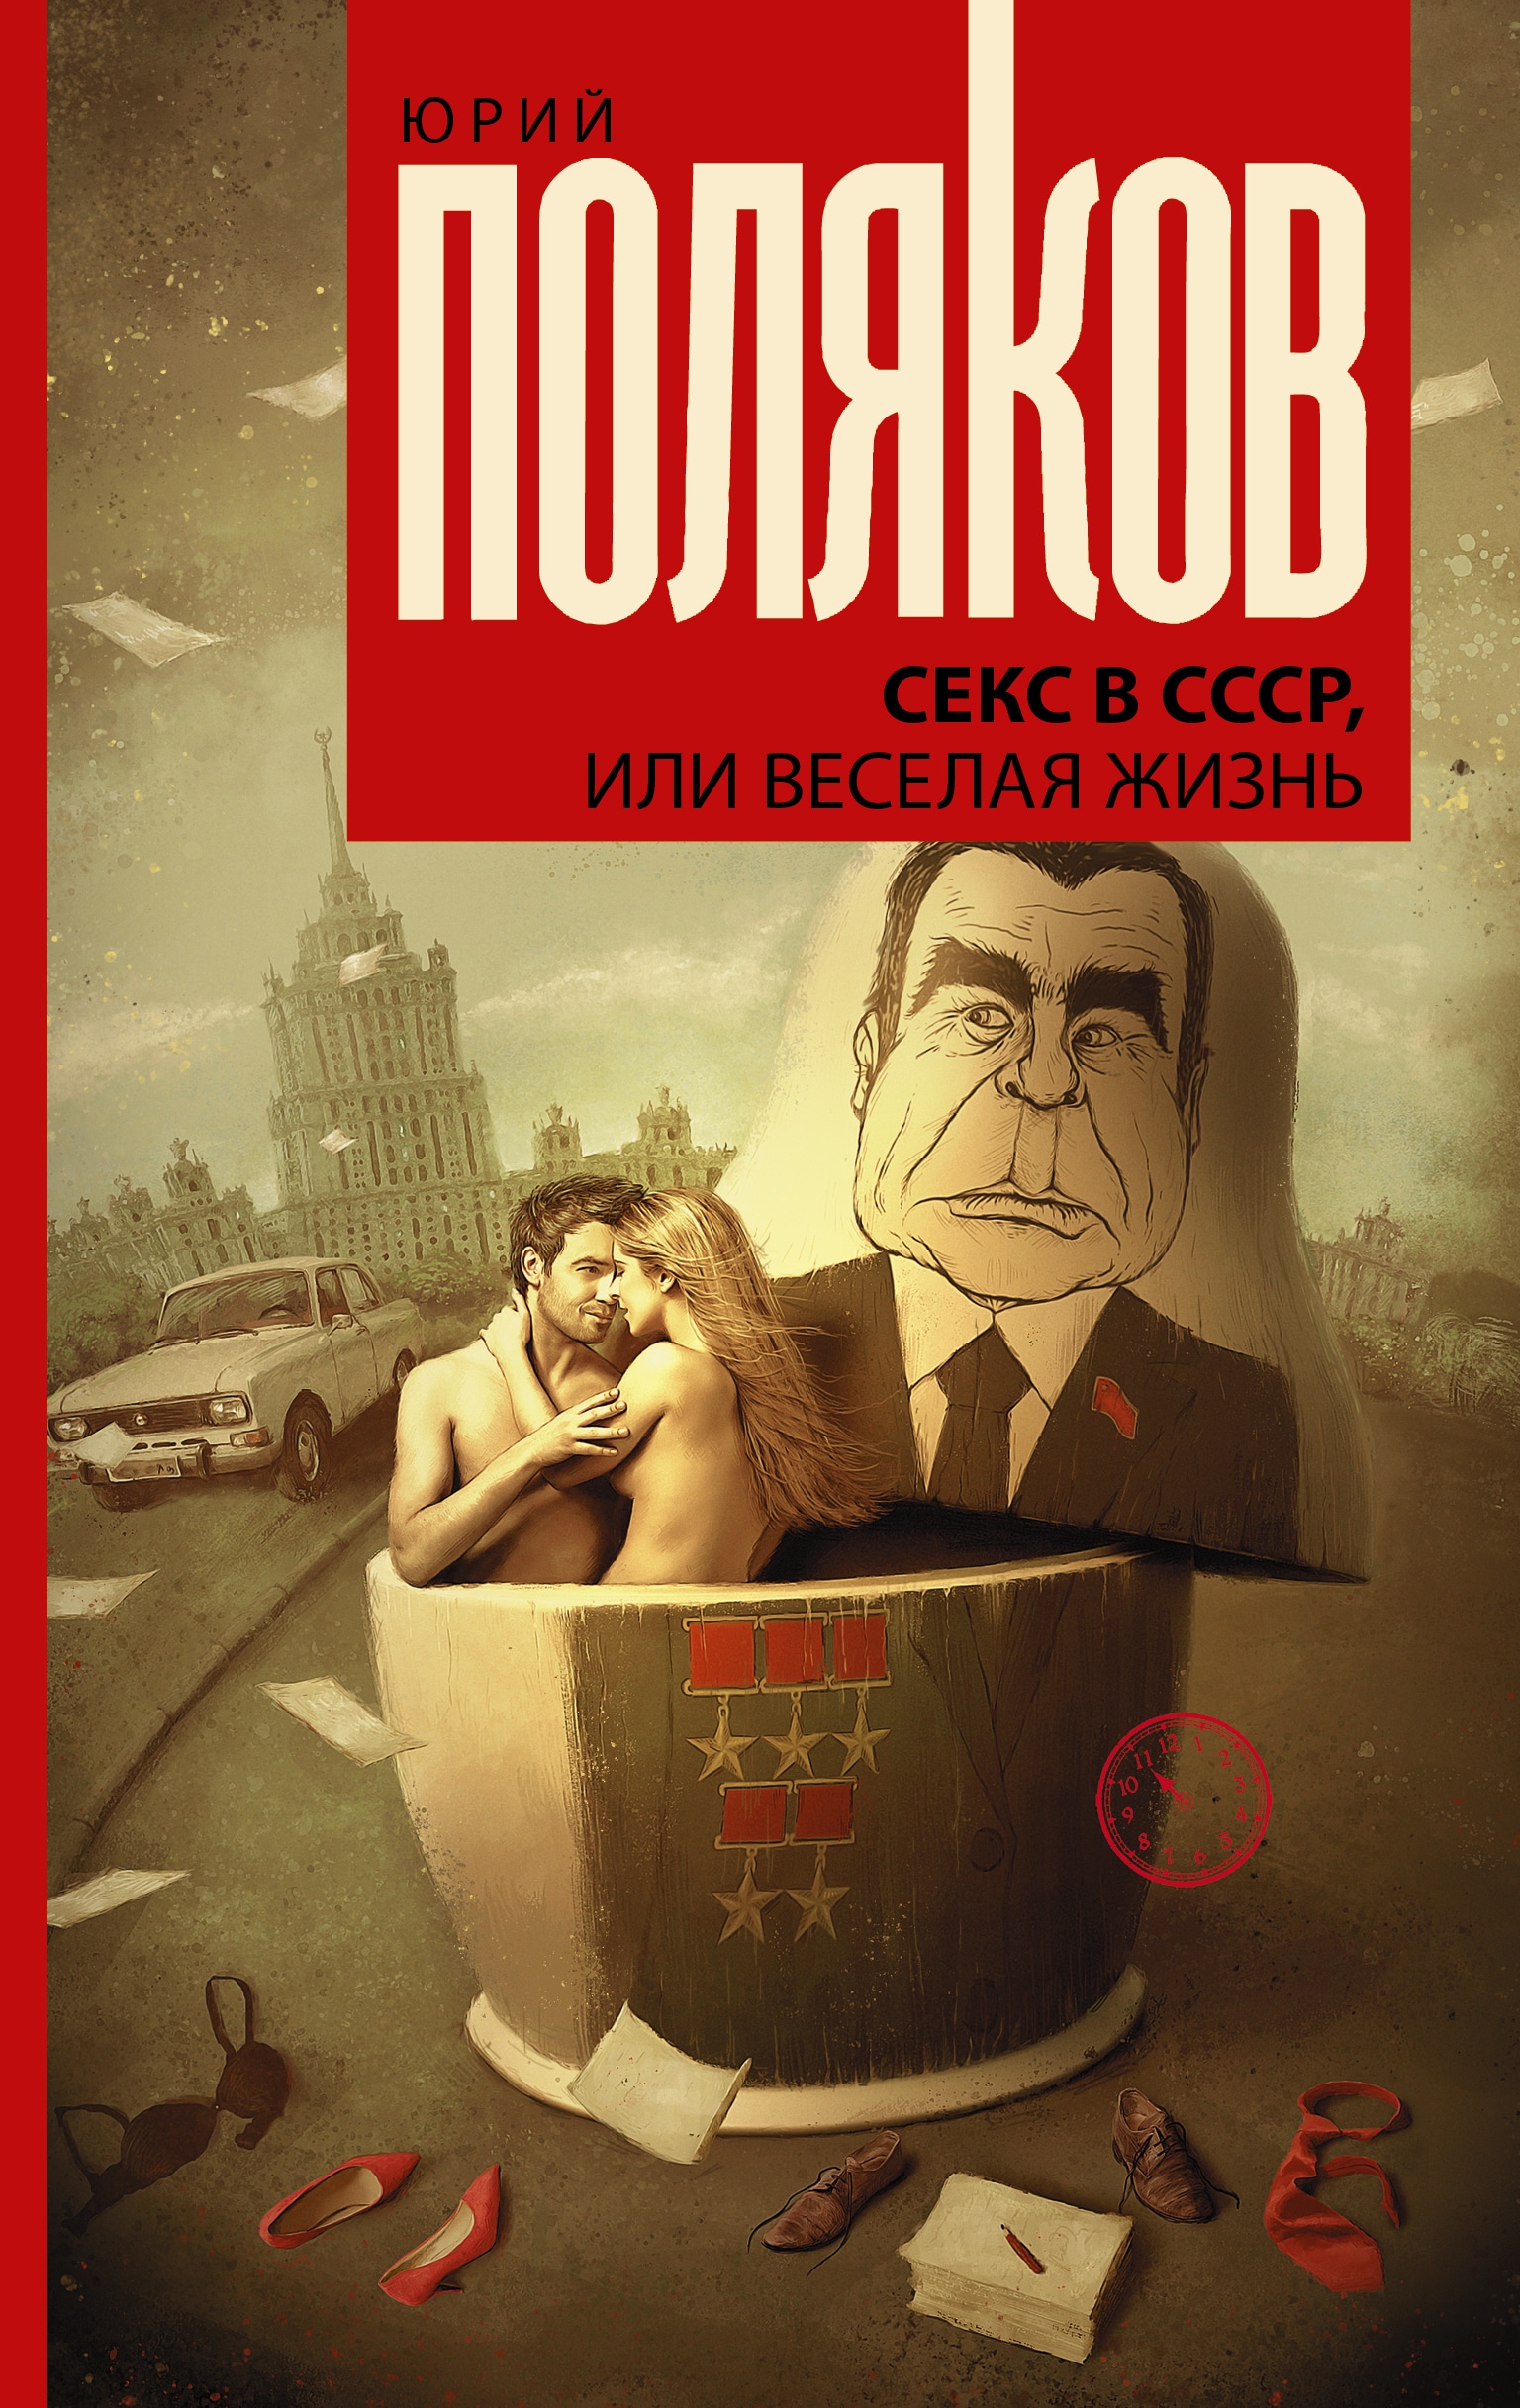 Книга «Секс в СССР, или Веселая жизнь» Поляков Юрий Михайлович — 2021 г.